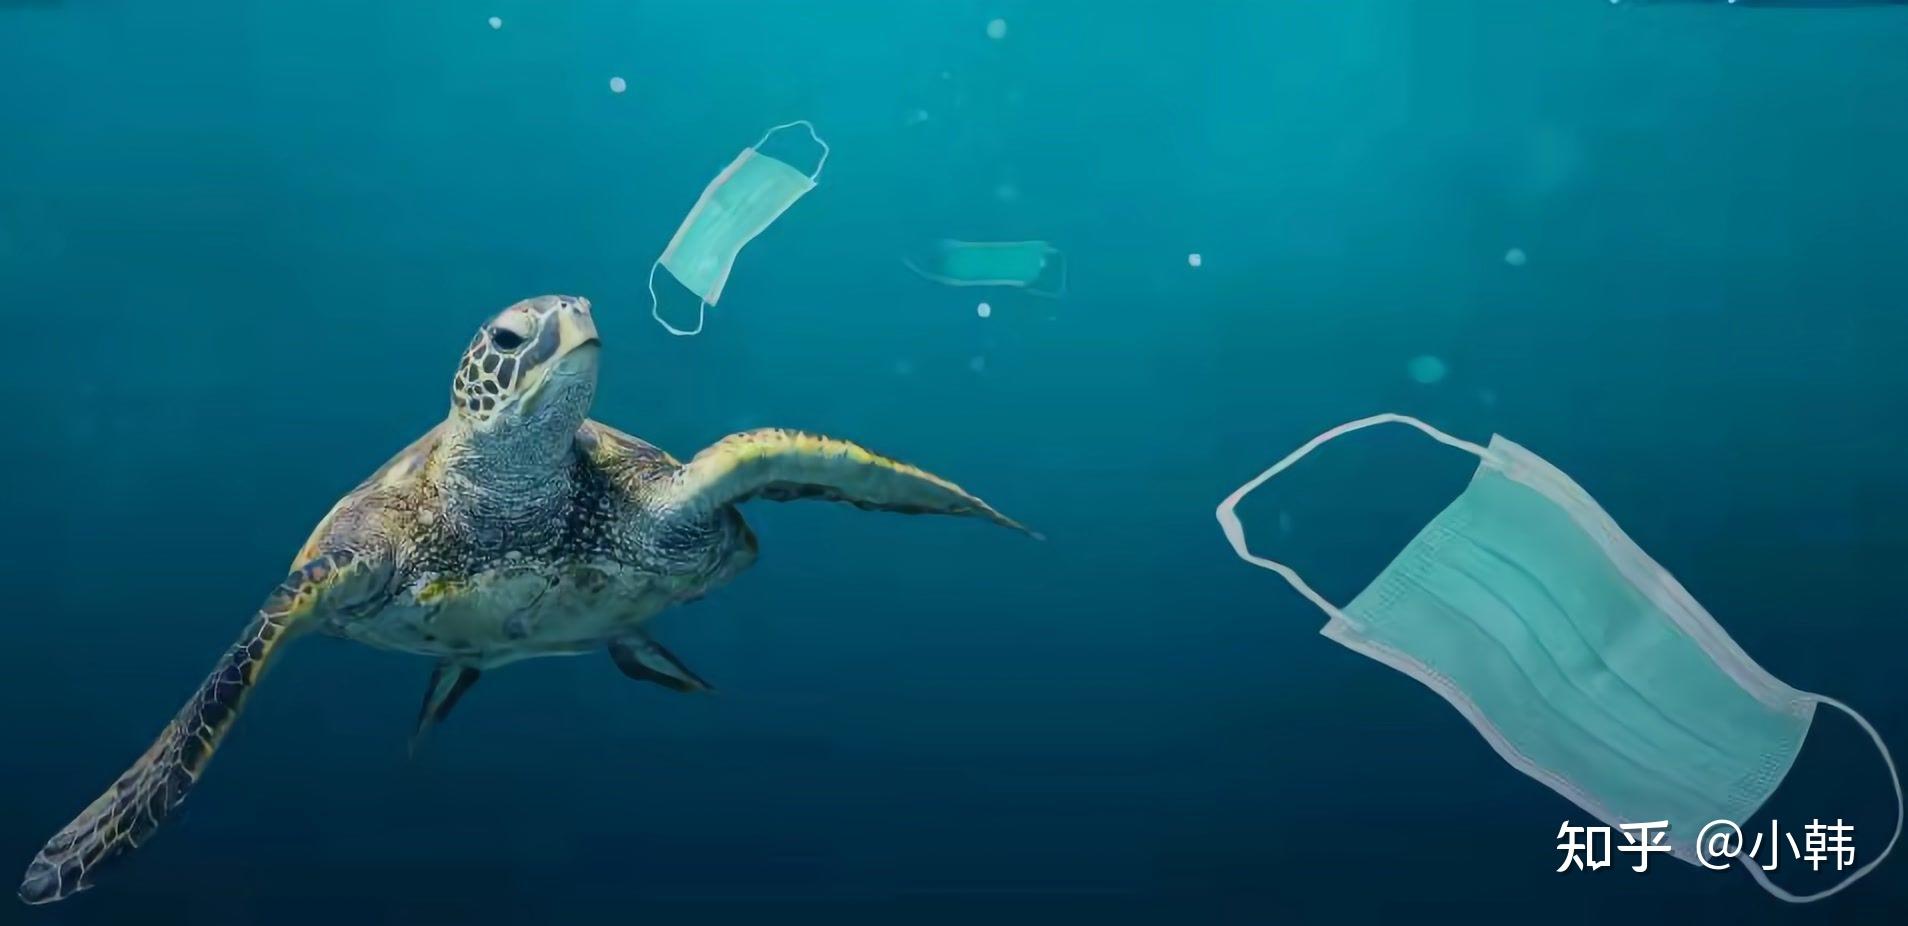 人类丢弃的大量口罩流入海洋并严重污染海洋请垃圾分类回收